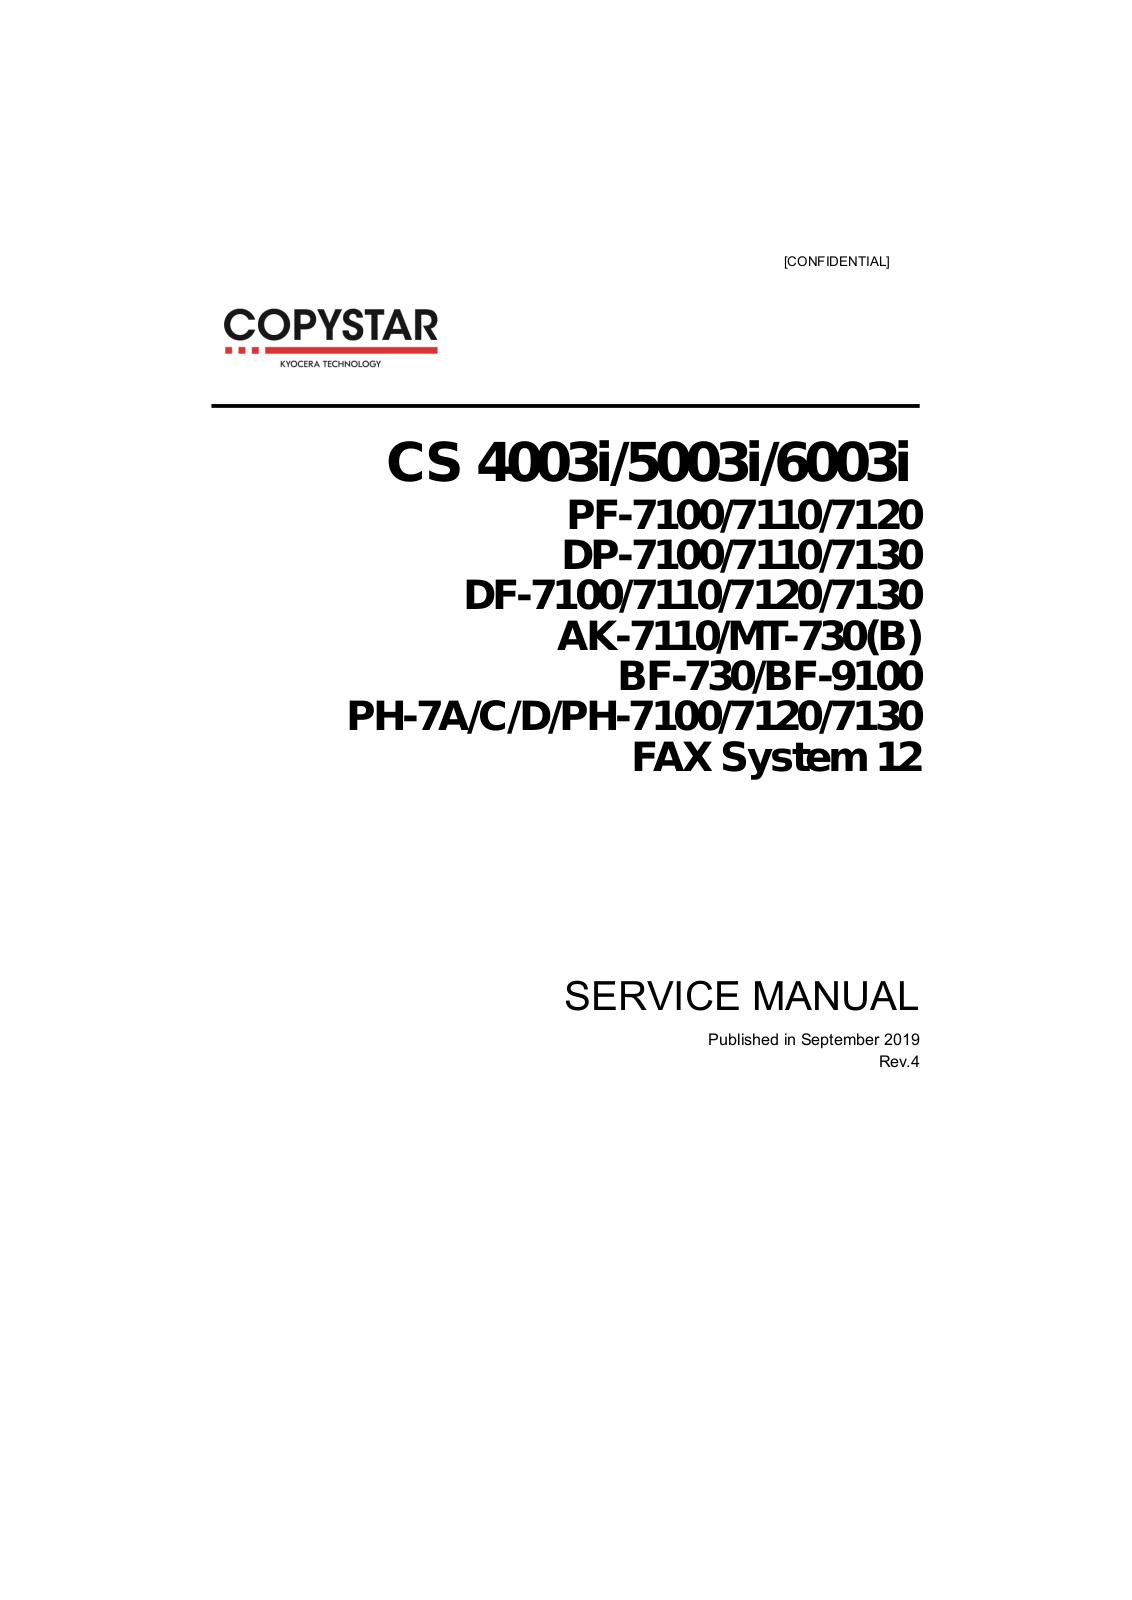 Kyocera CS4003i, CS5003i, CS6003i Service Manual